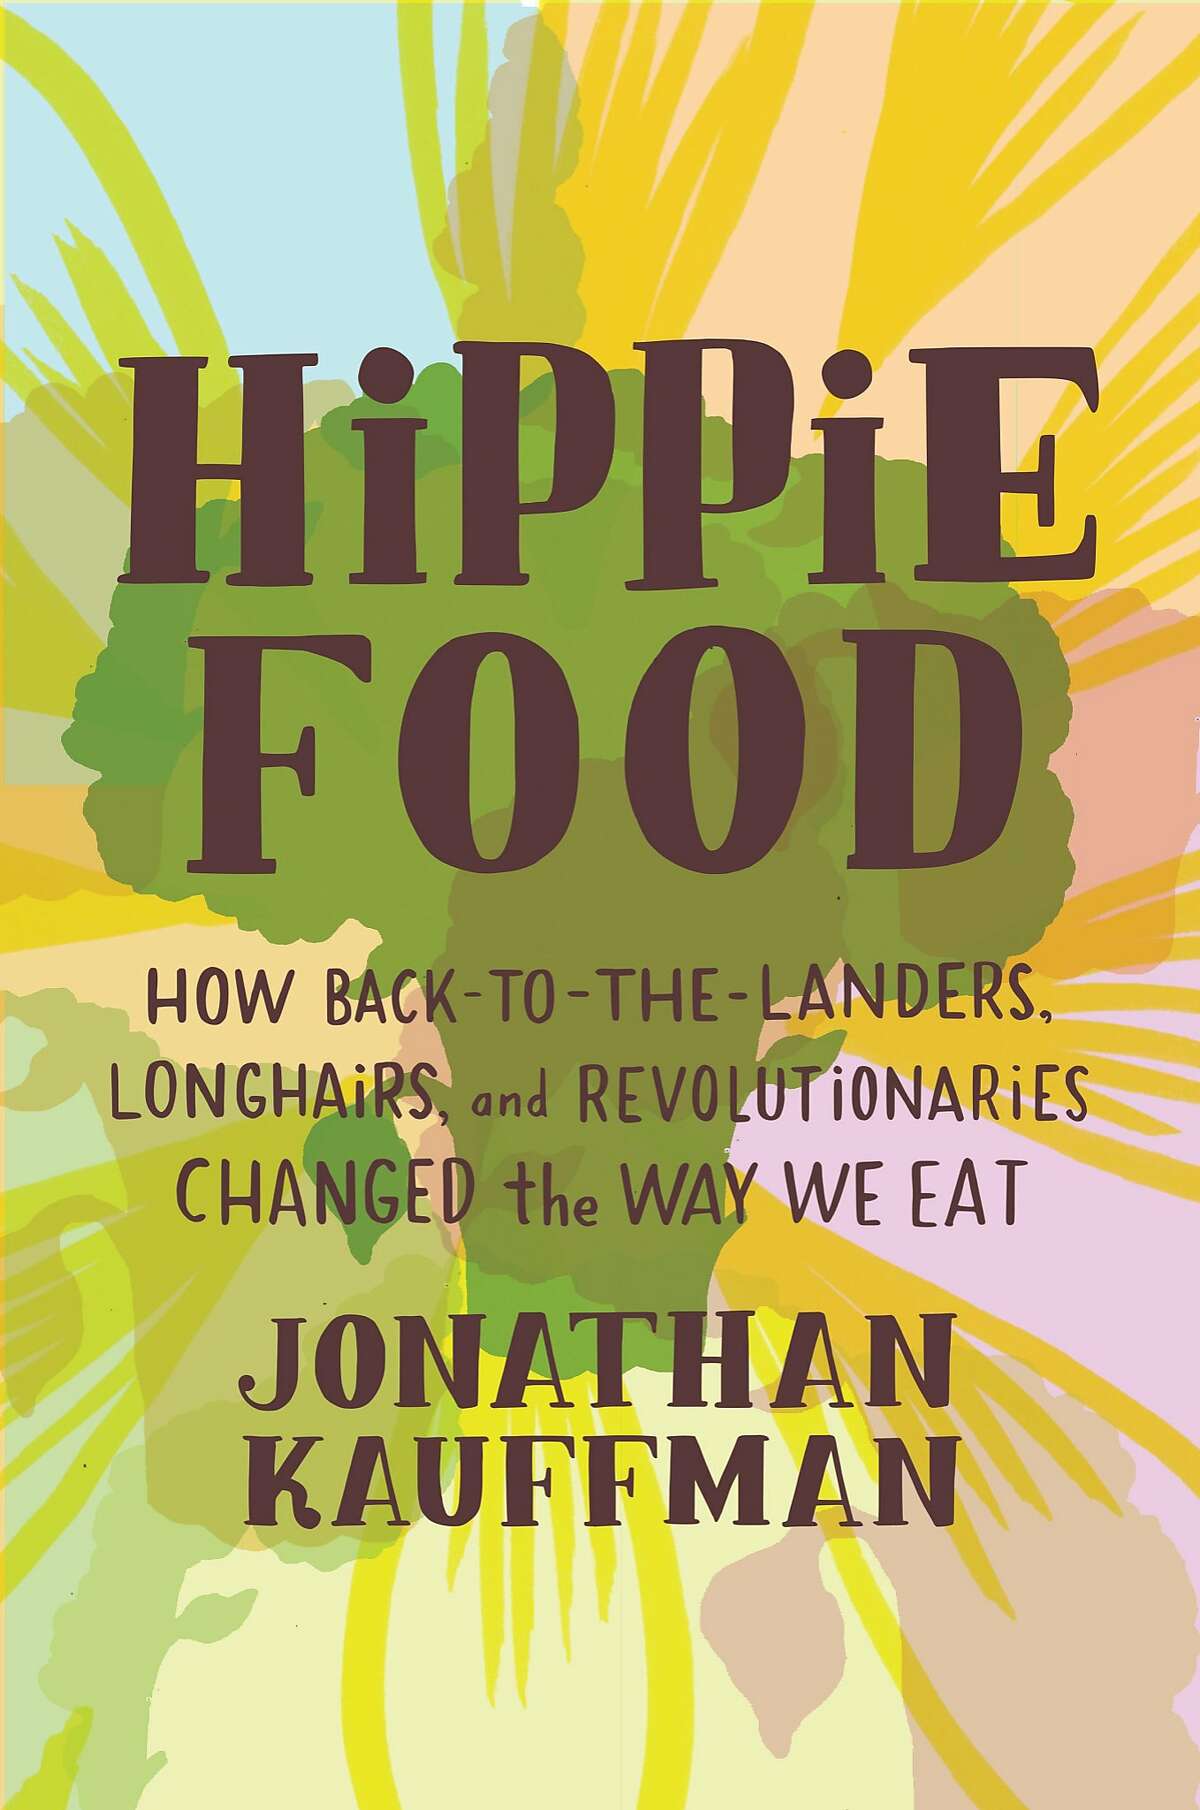 “Hippie Food” by Jonathan Kauffman.